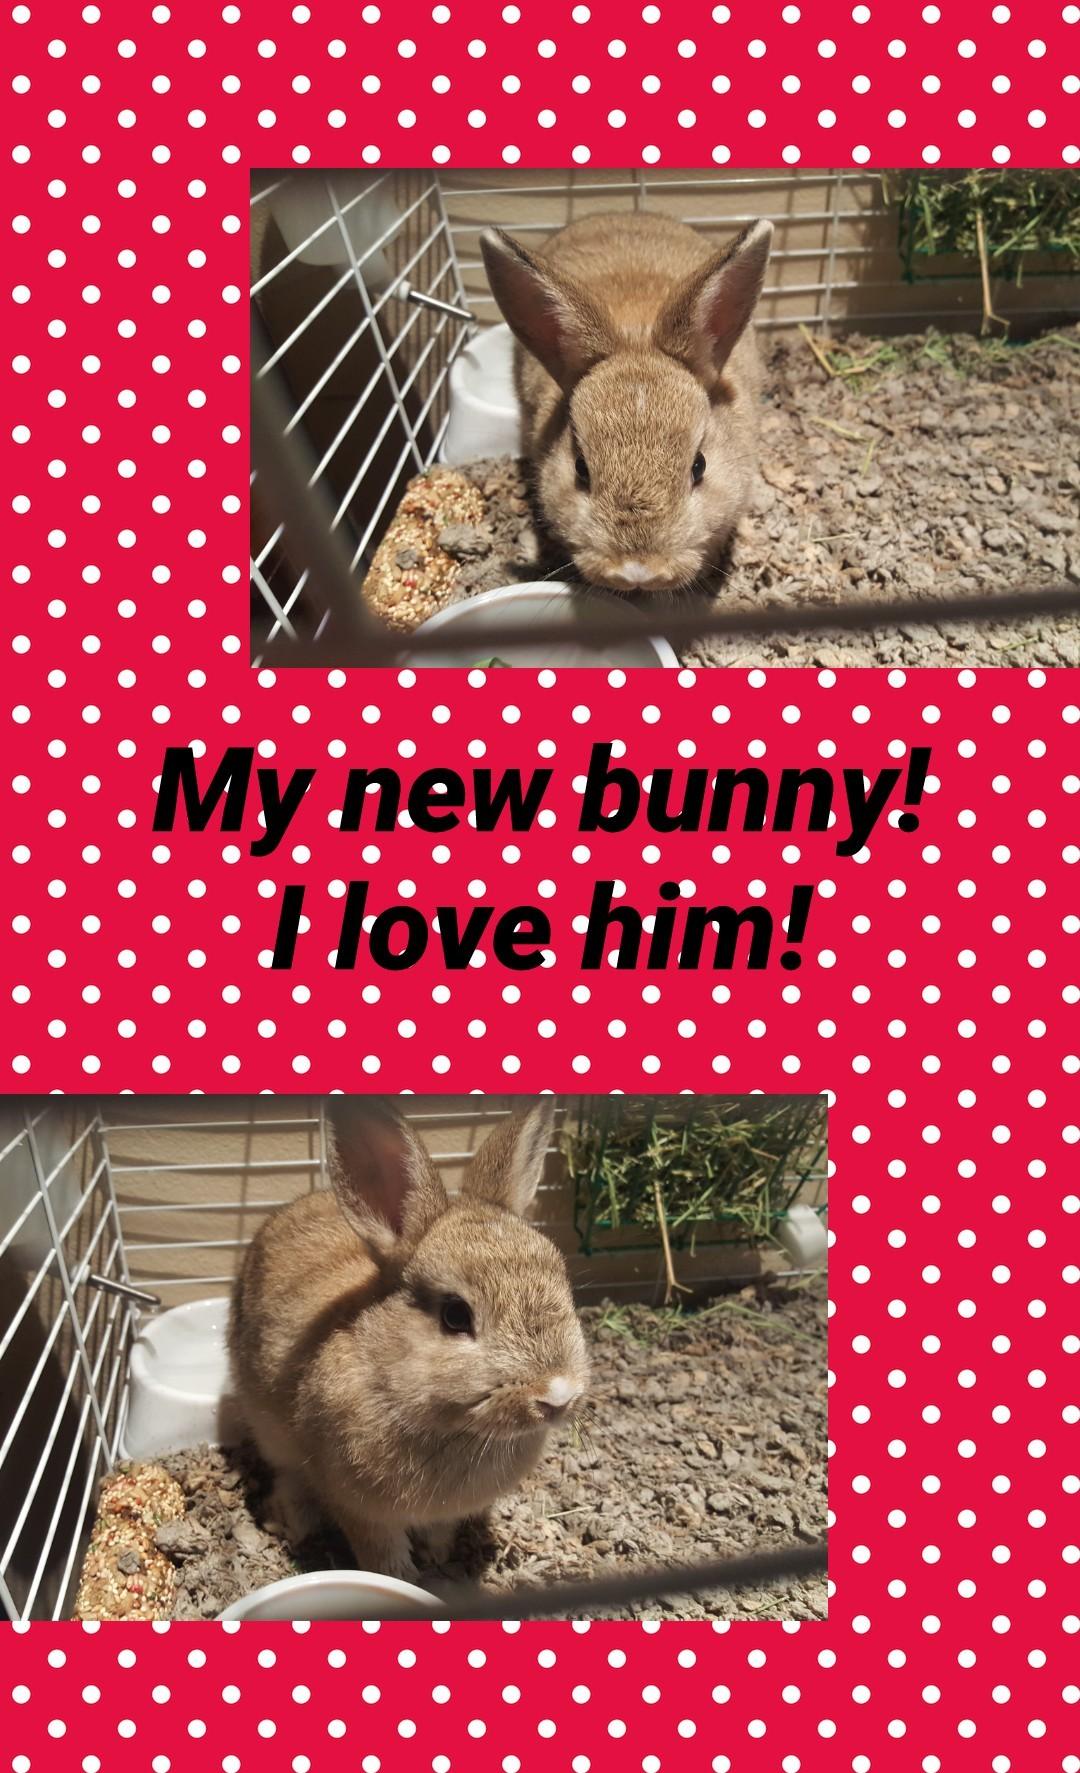 My new bunny!
I love him!